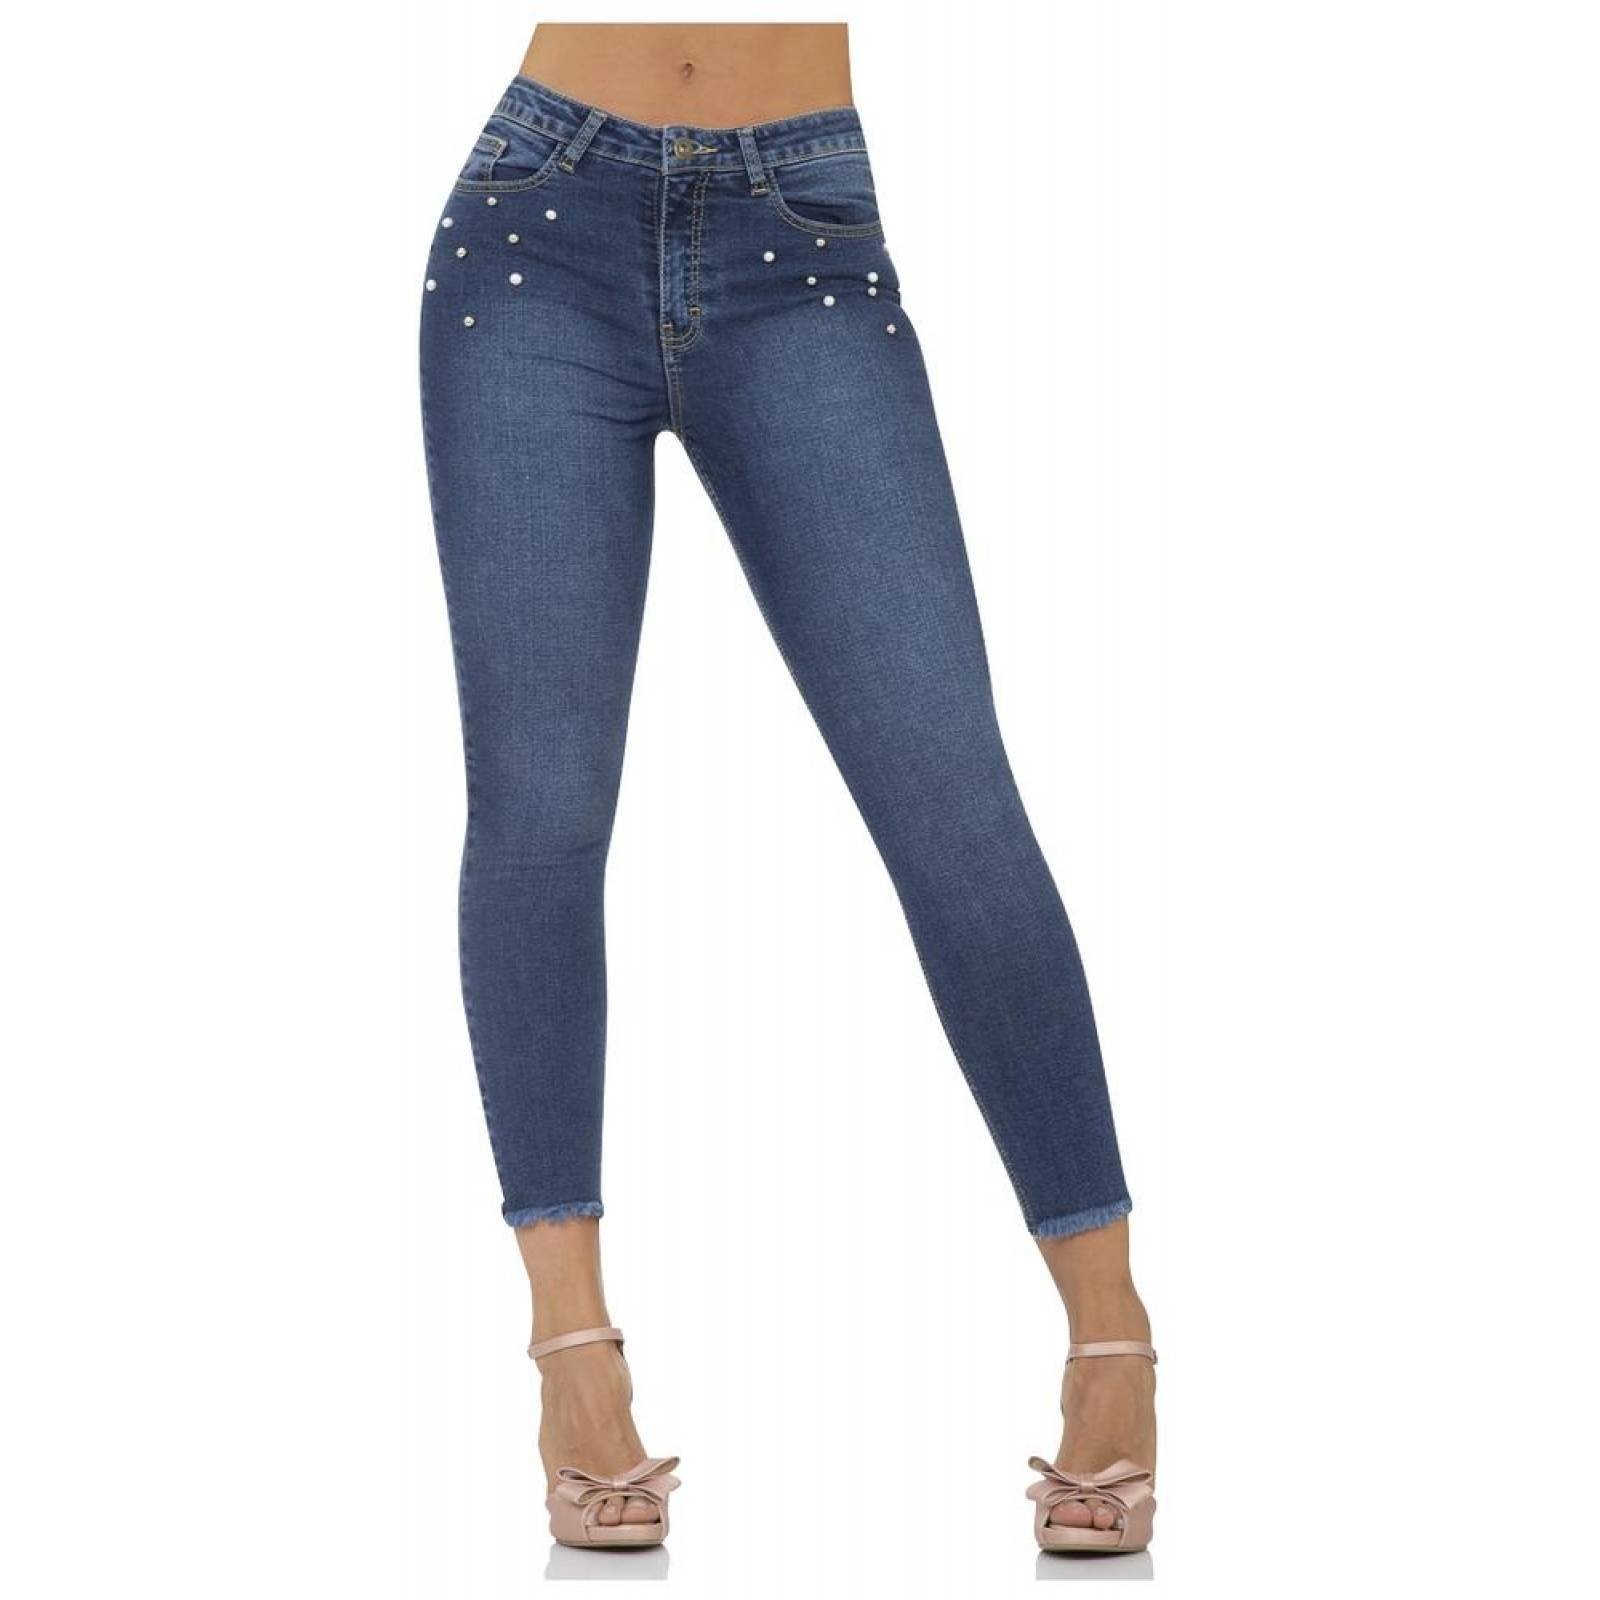 Jeans Moda Mujer Salvaje Tentación Stone 63103202 Mezclilla Stretch 